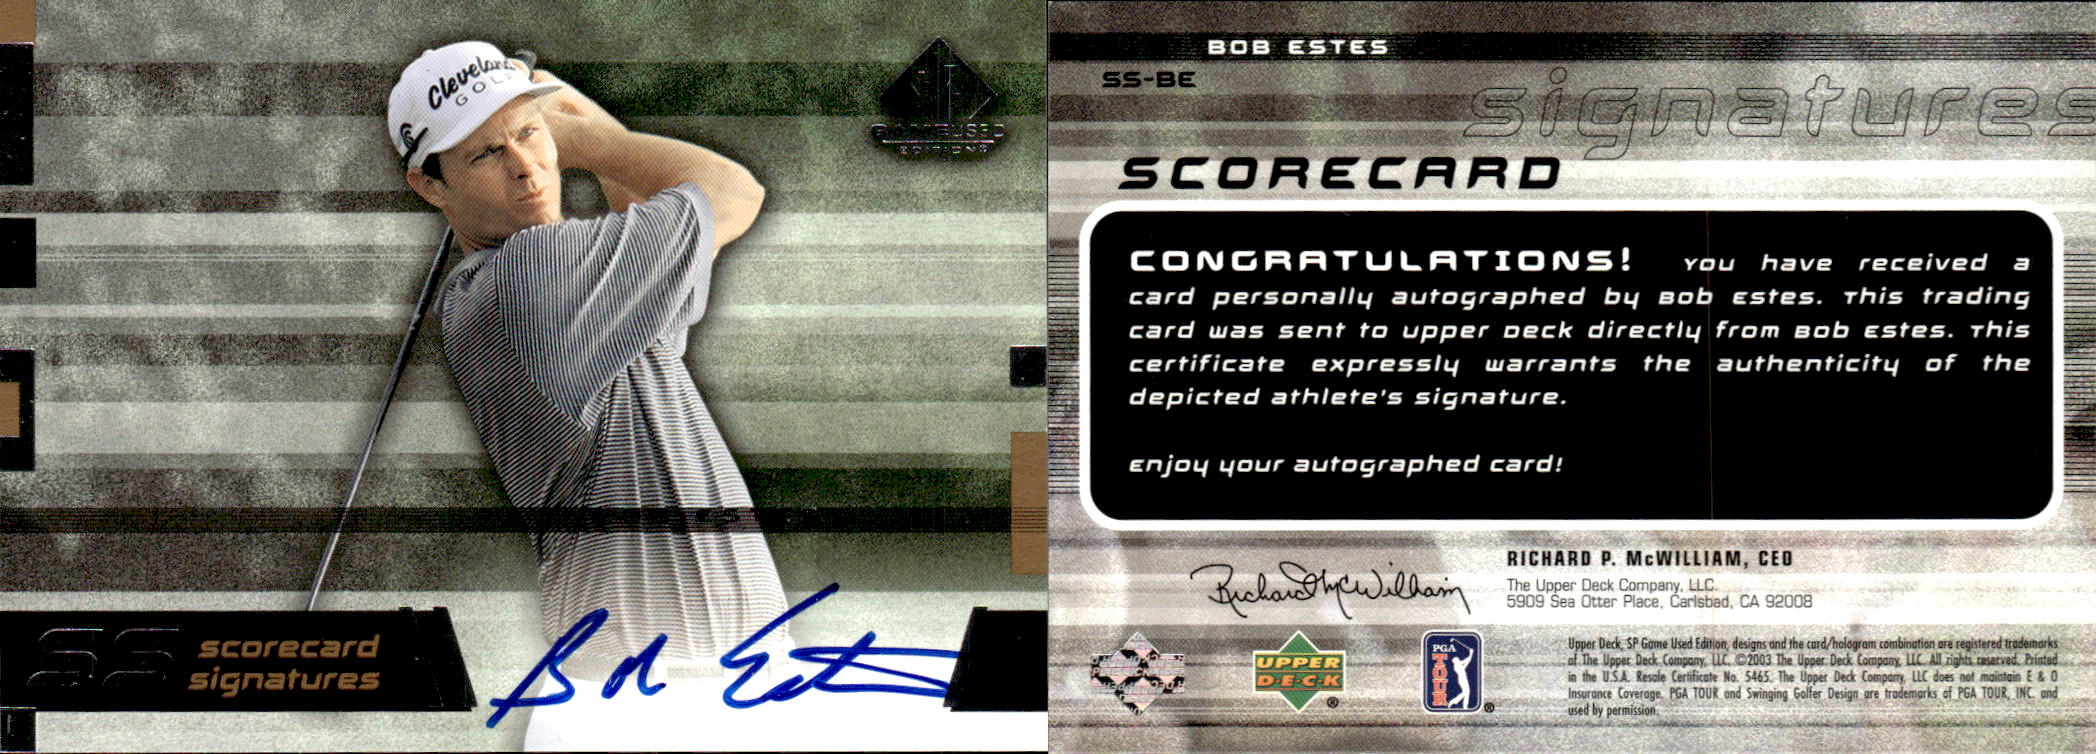 2003 SP Game Used Scorecard Signatures #BE Bob Estes